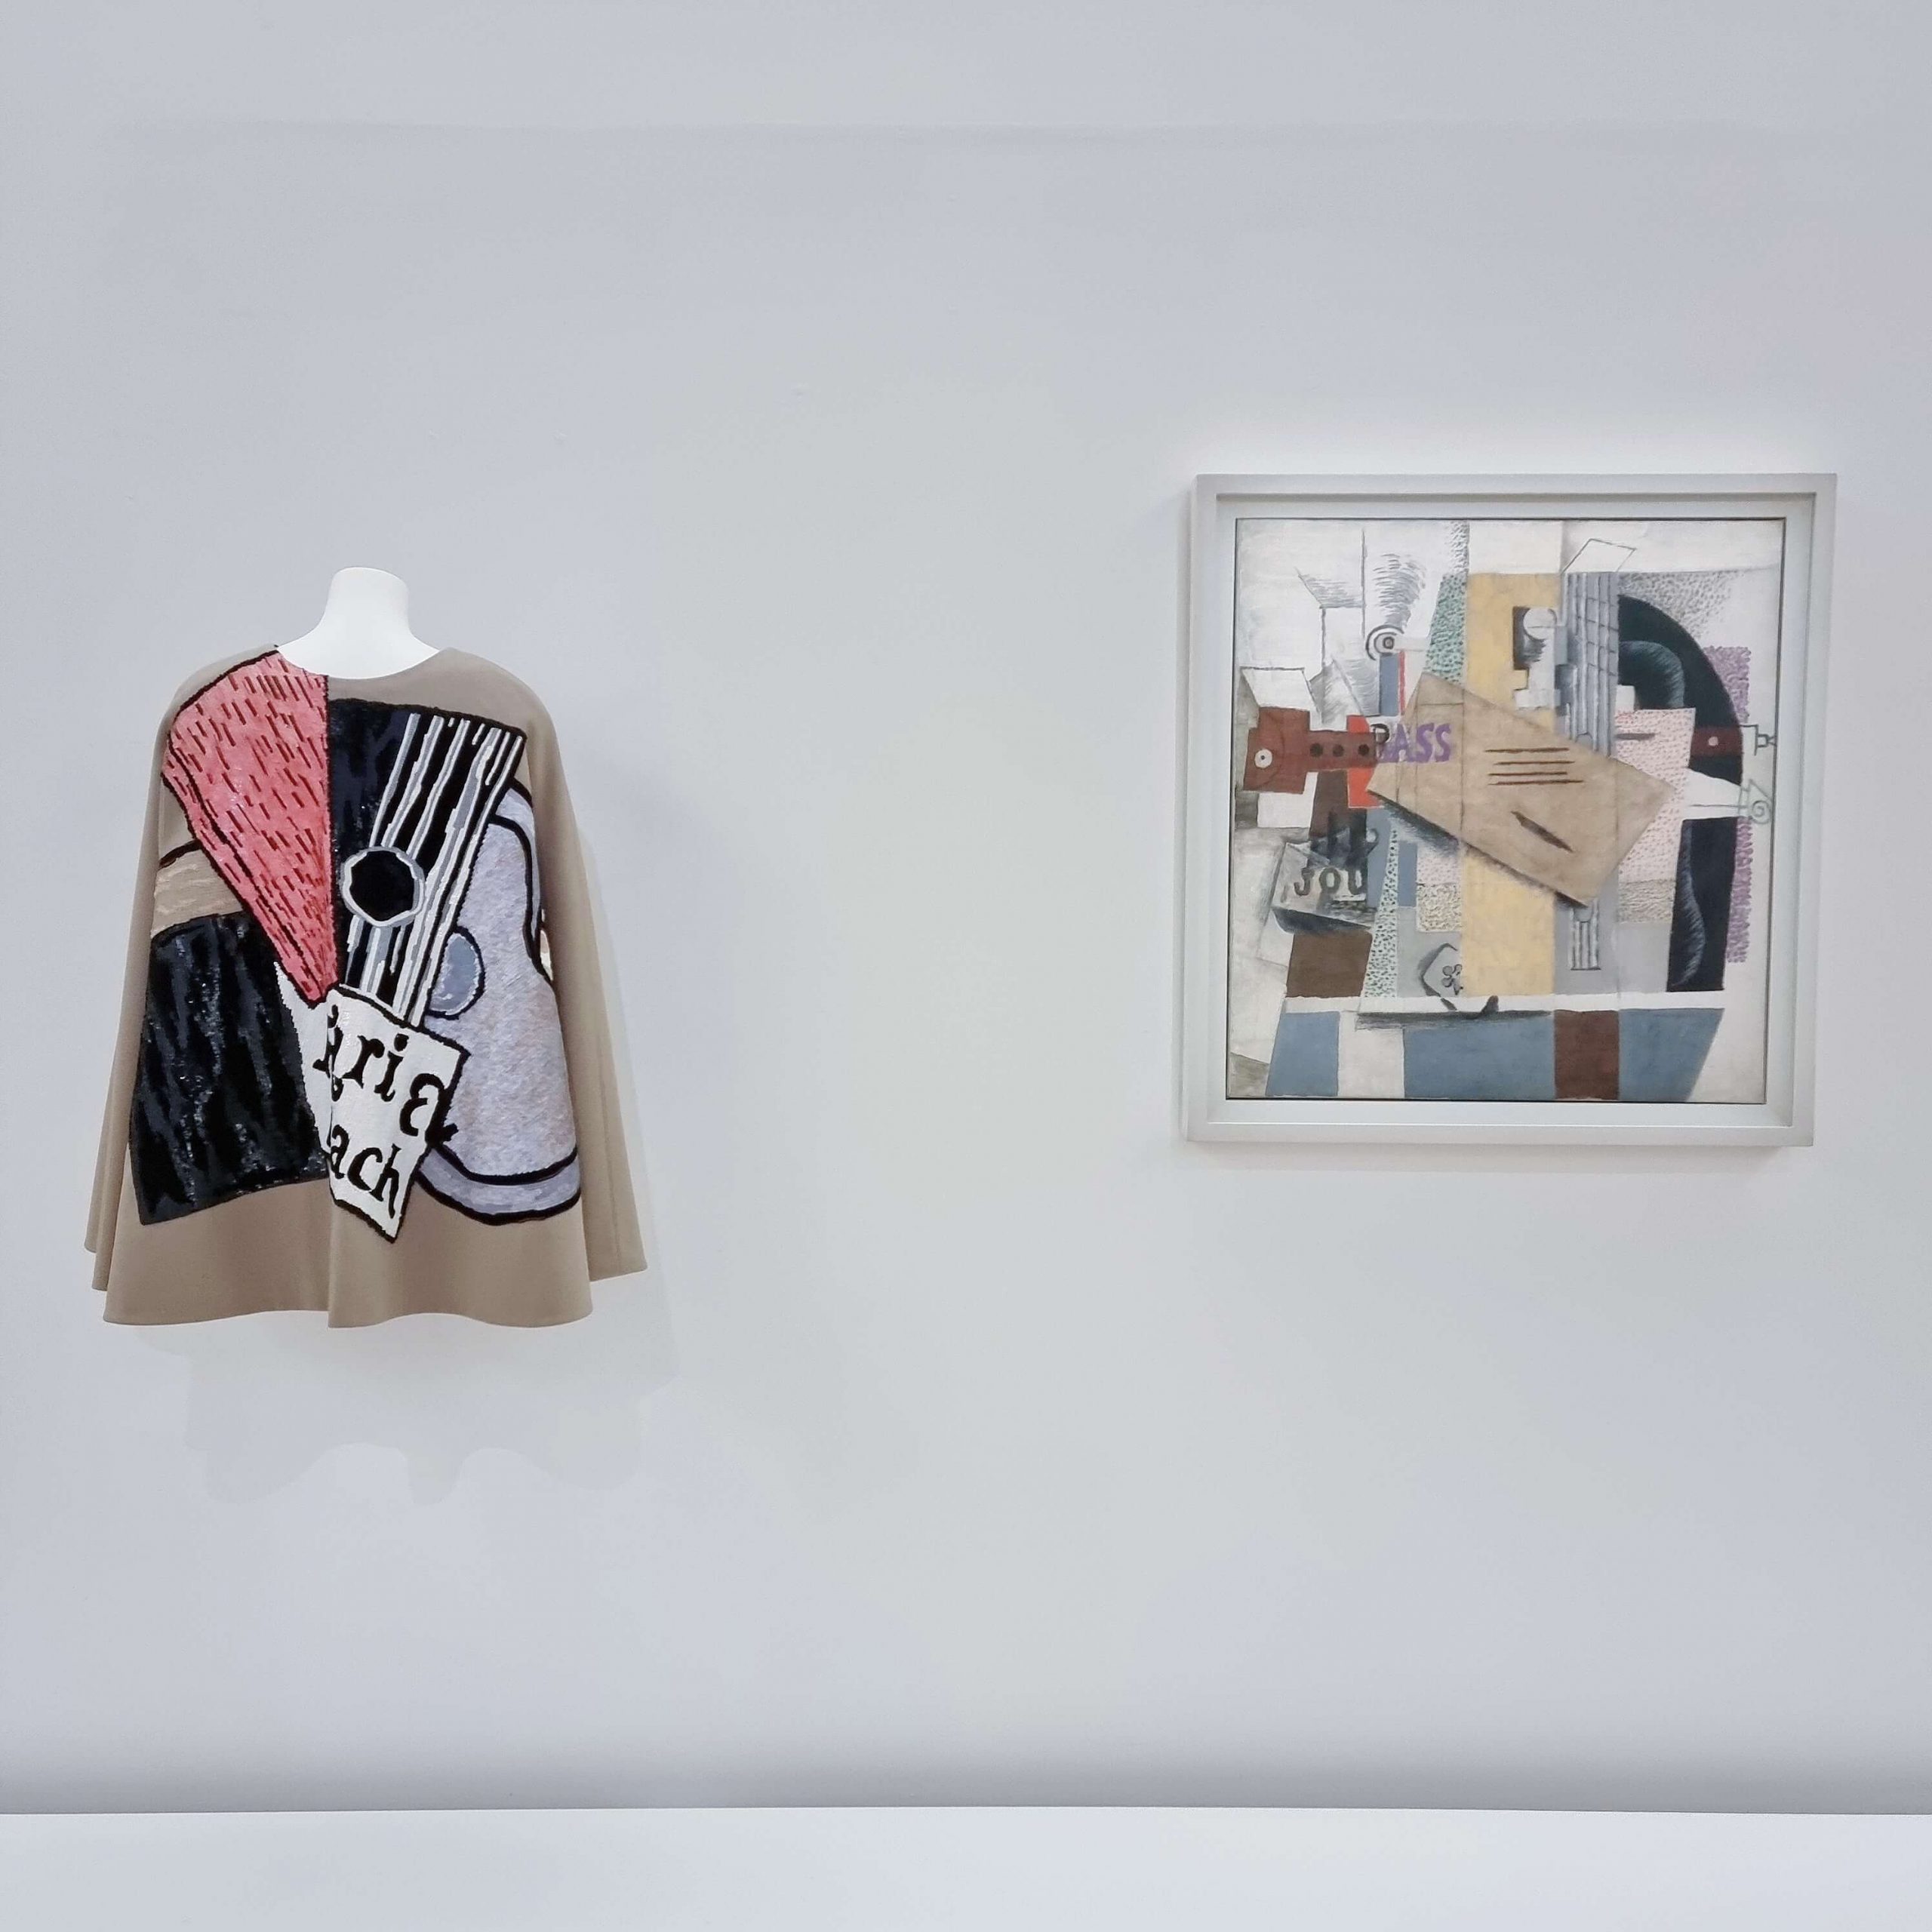 Exhibition view / Yves Saint Laurent aux Musées / Centre Pompidou, Paris, 2022